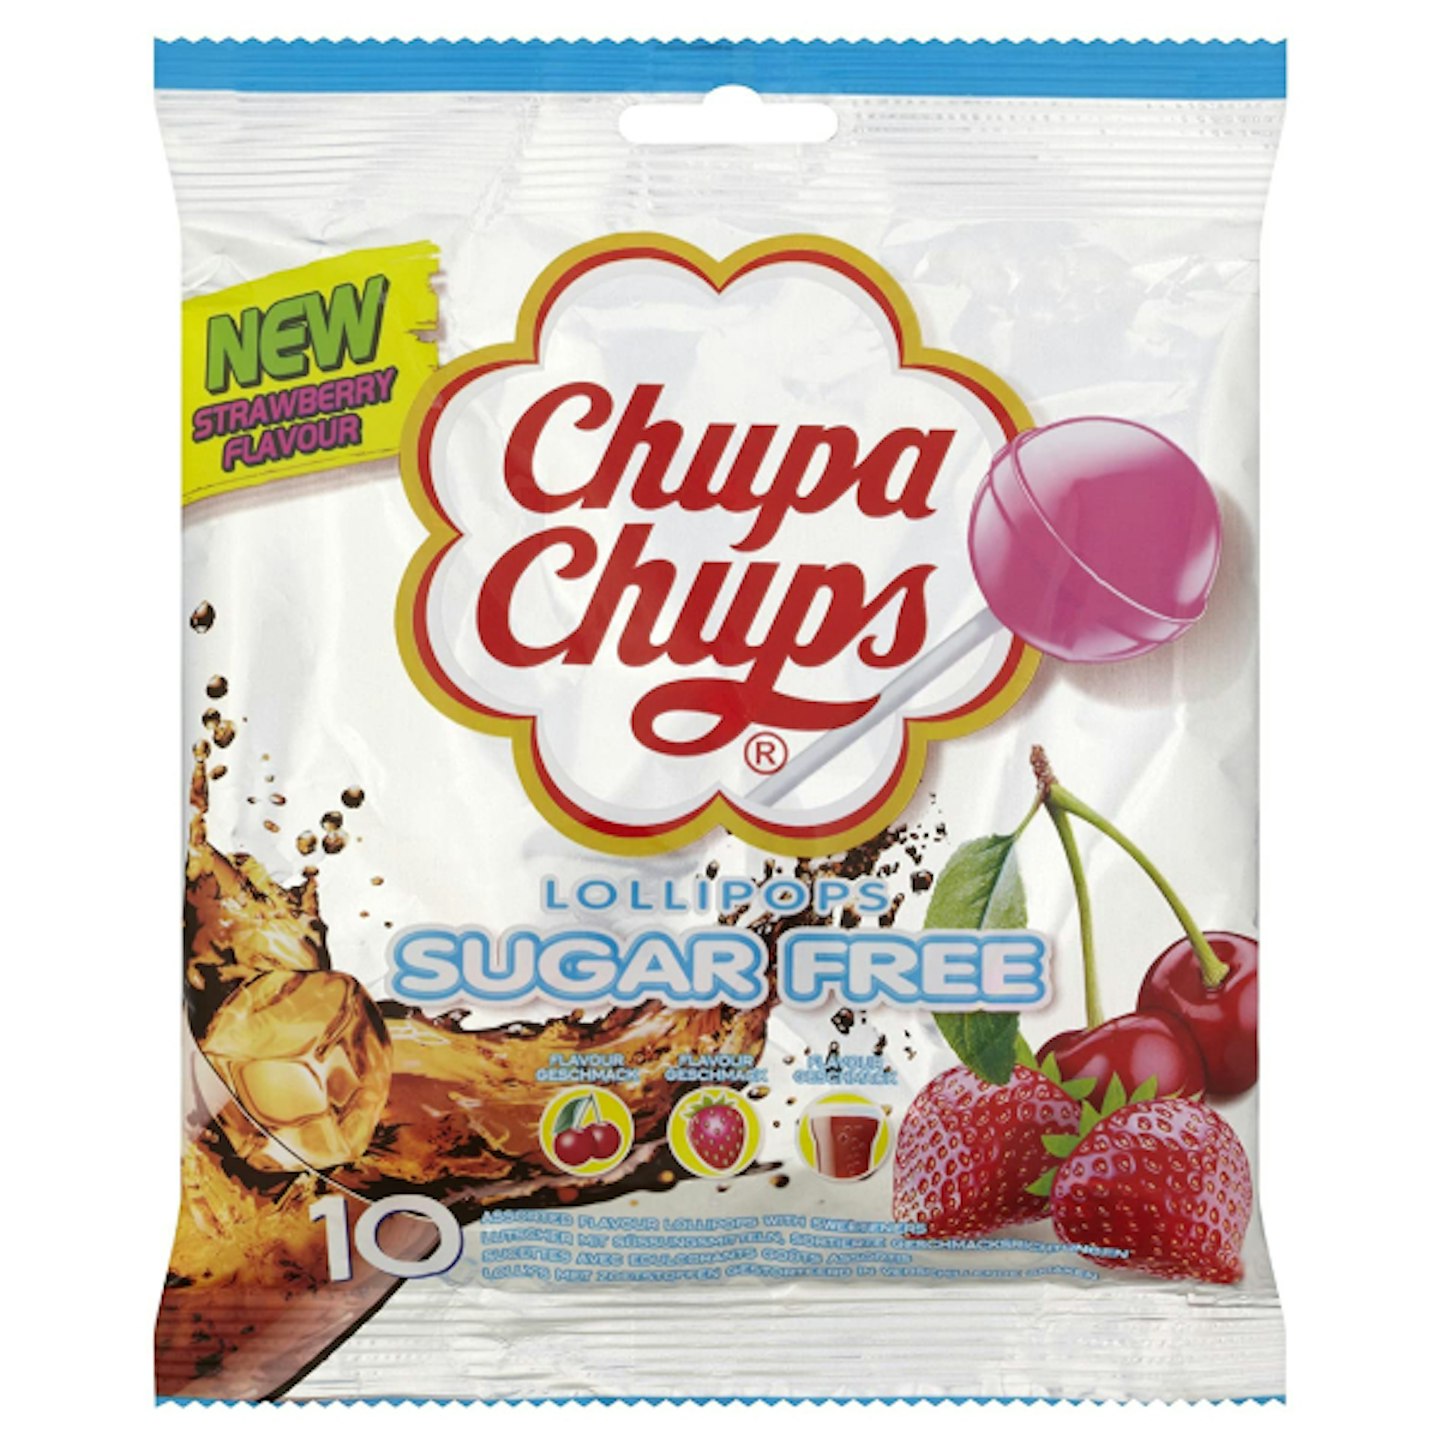 Chupa Chups lollies